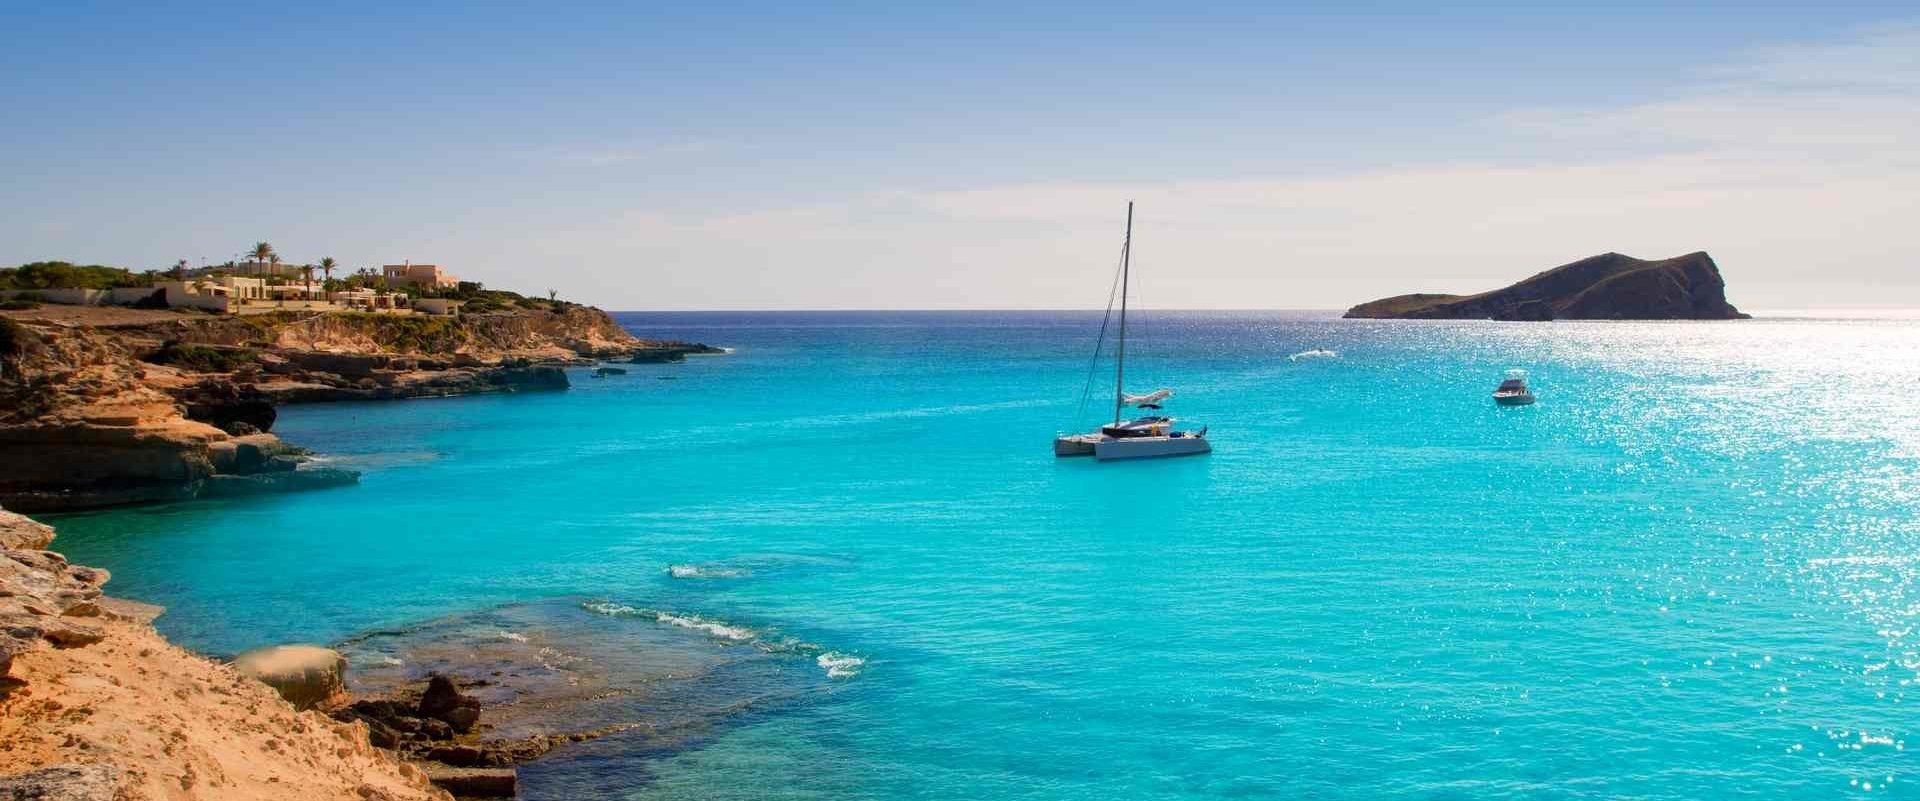 Crociera "AlI Inclusive": Maiorca e Isole Baleari in catamarano